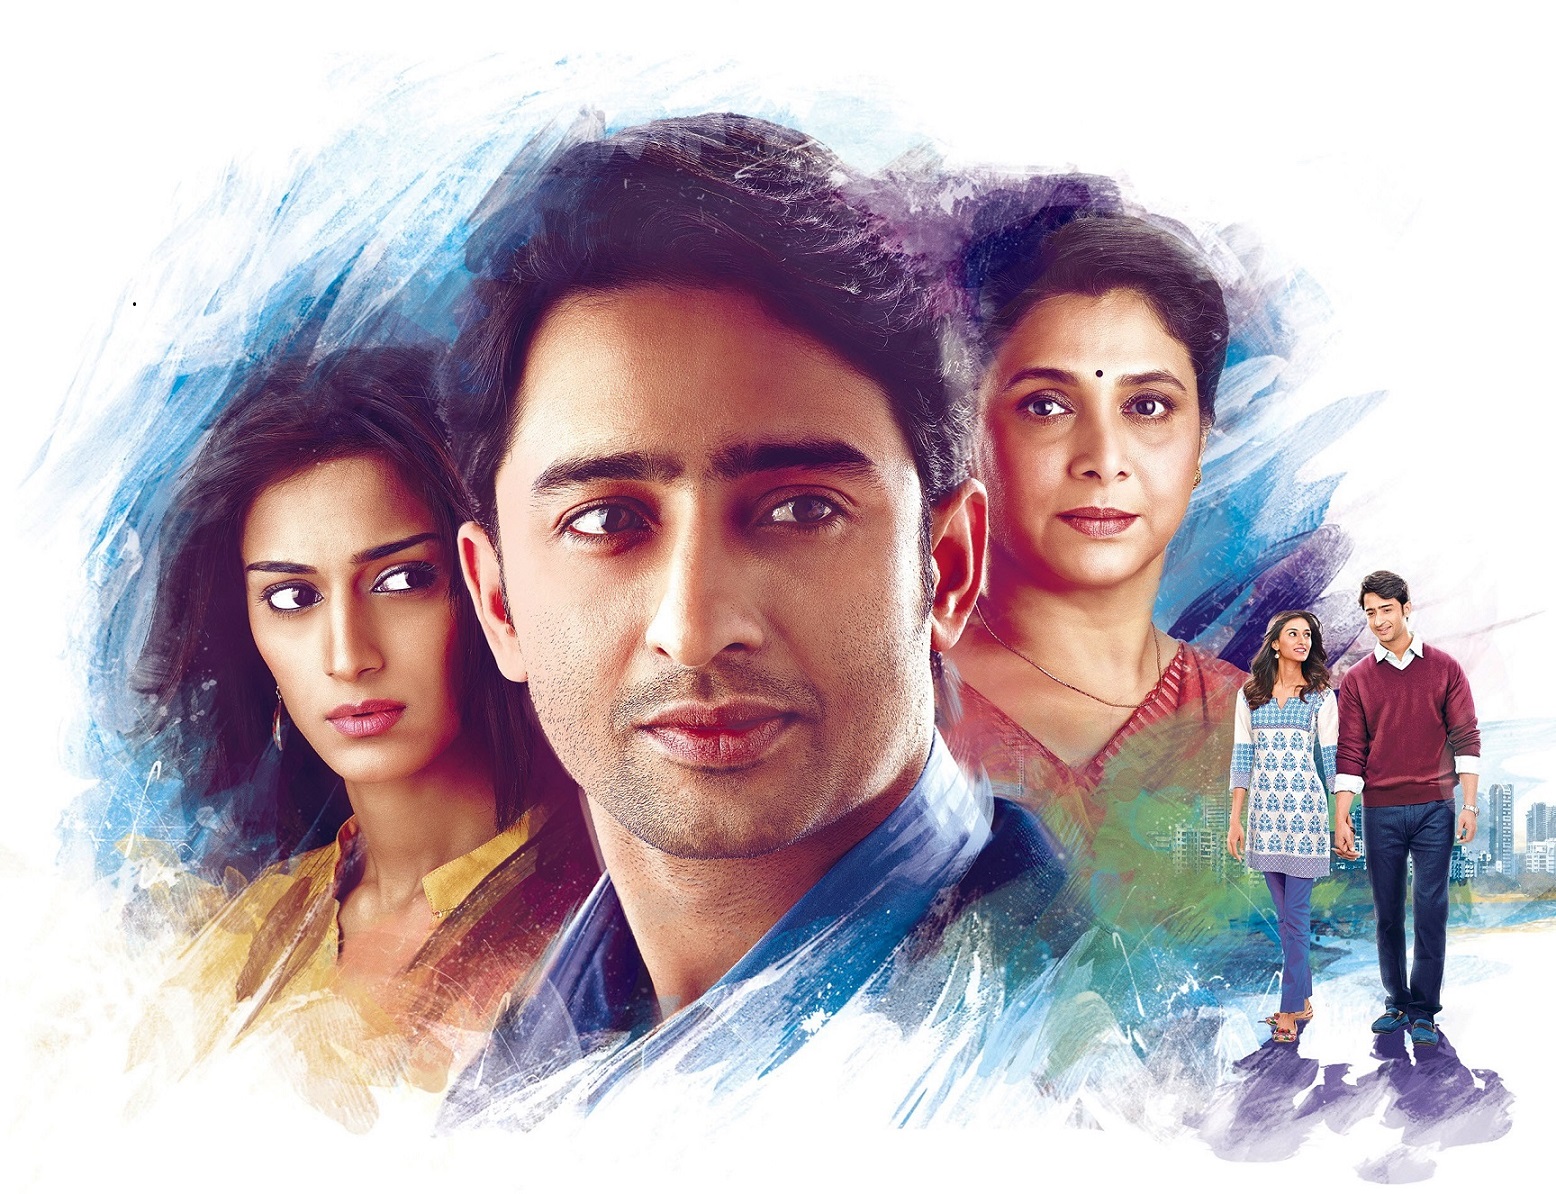 الدراما الاجتماعيّة الهنديّة المعاصرة "وجوه الحب" التي تجمع بين النجمين شهير شيخ وإريكا فرنانديس، وتُعرض حصريّاً ولأول مرّة على "MBC Bollywood".